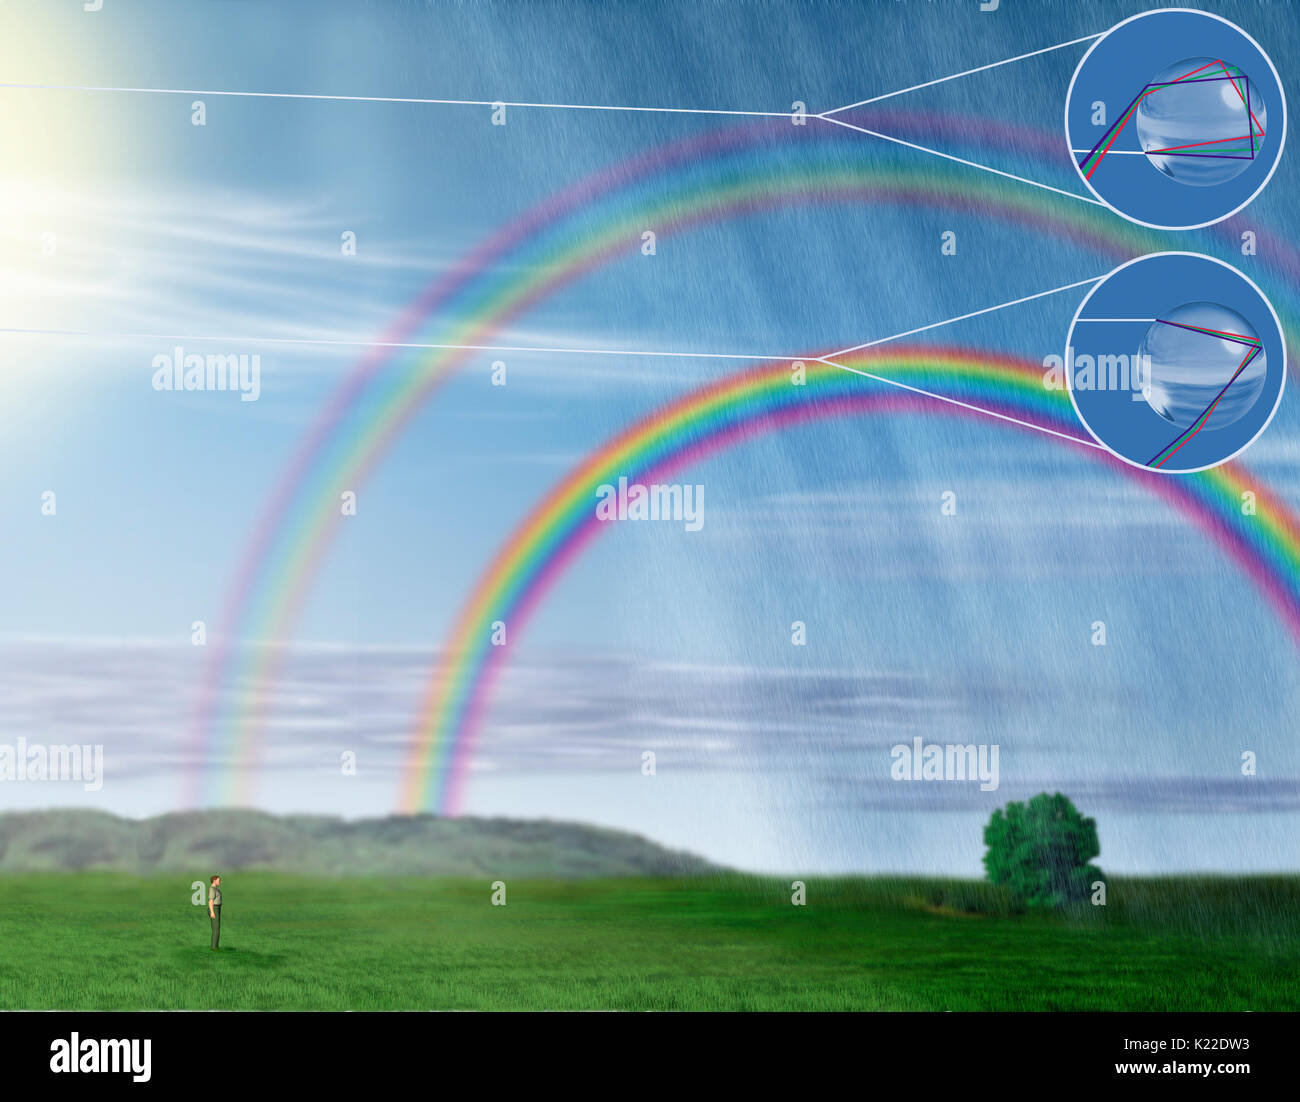 A volte due riflessioni si verificano all'interno di una singola goccia di pioggia. Un arcobaleno secondario, meno nettamente definito e con i colori in ordine inverso, quindi appare sopra il primo. Foto Stock